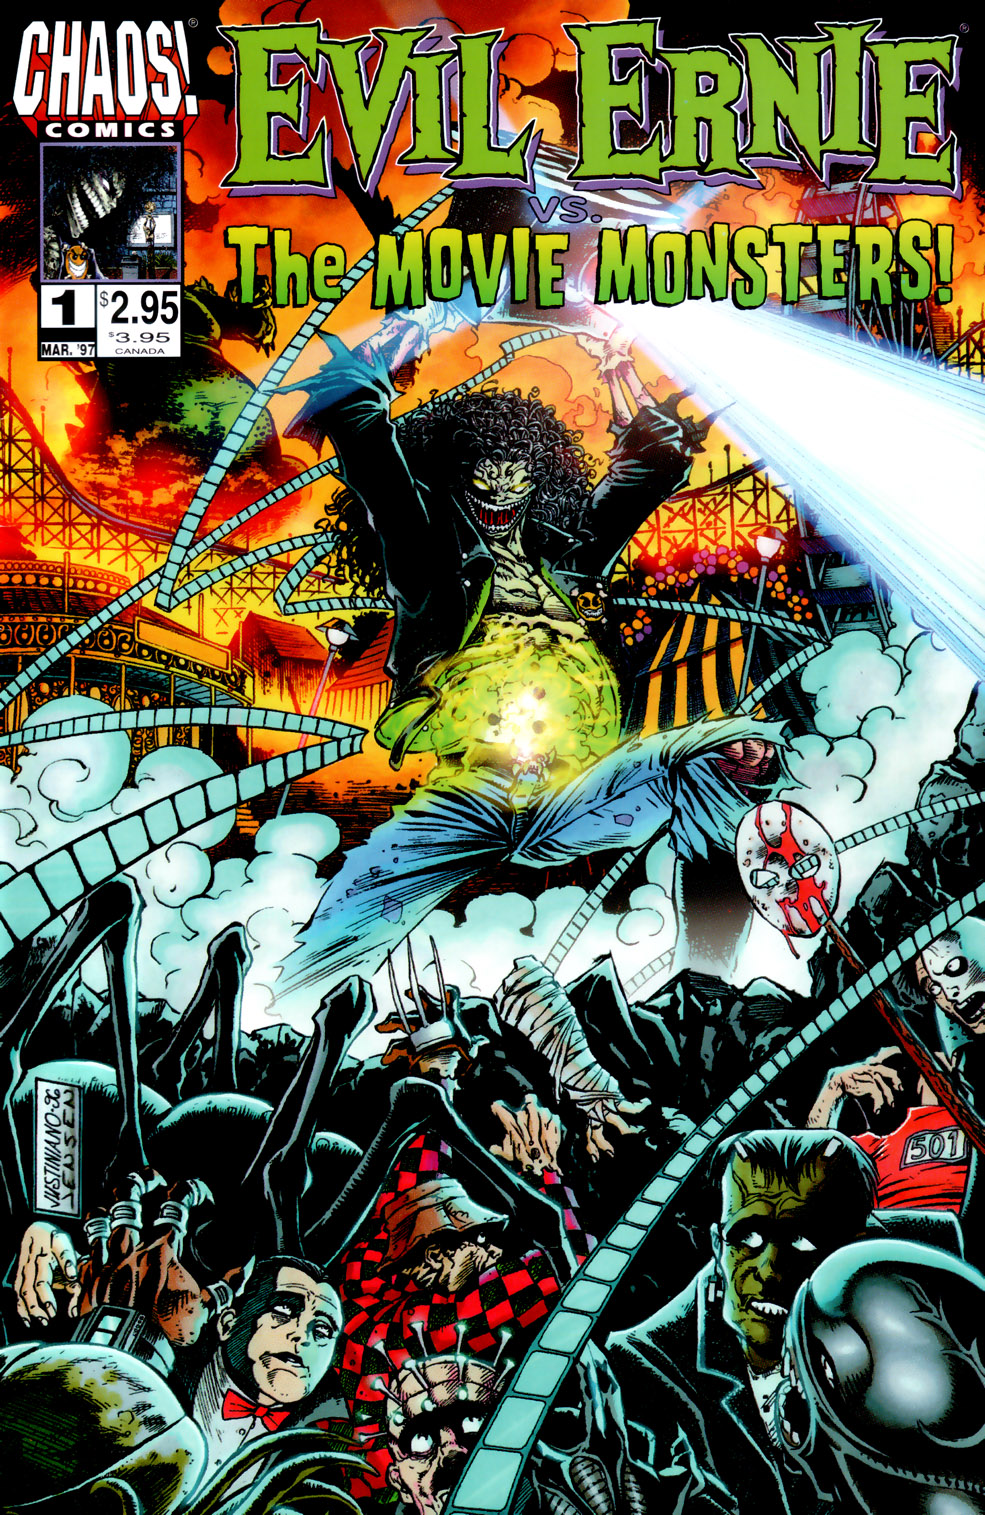 Read online Evil Ernie vs. the Movie Monsters comic -  Issue # Full - 1